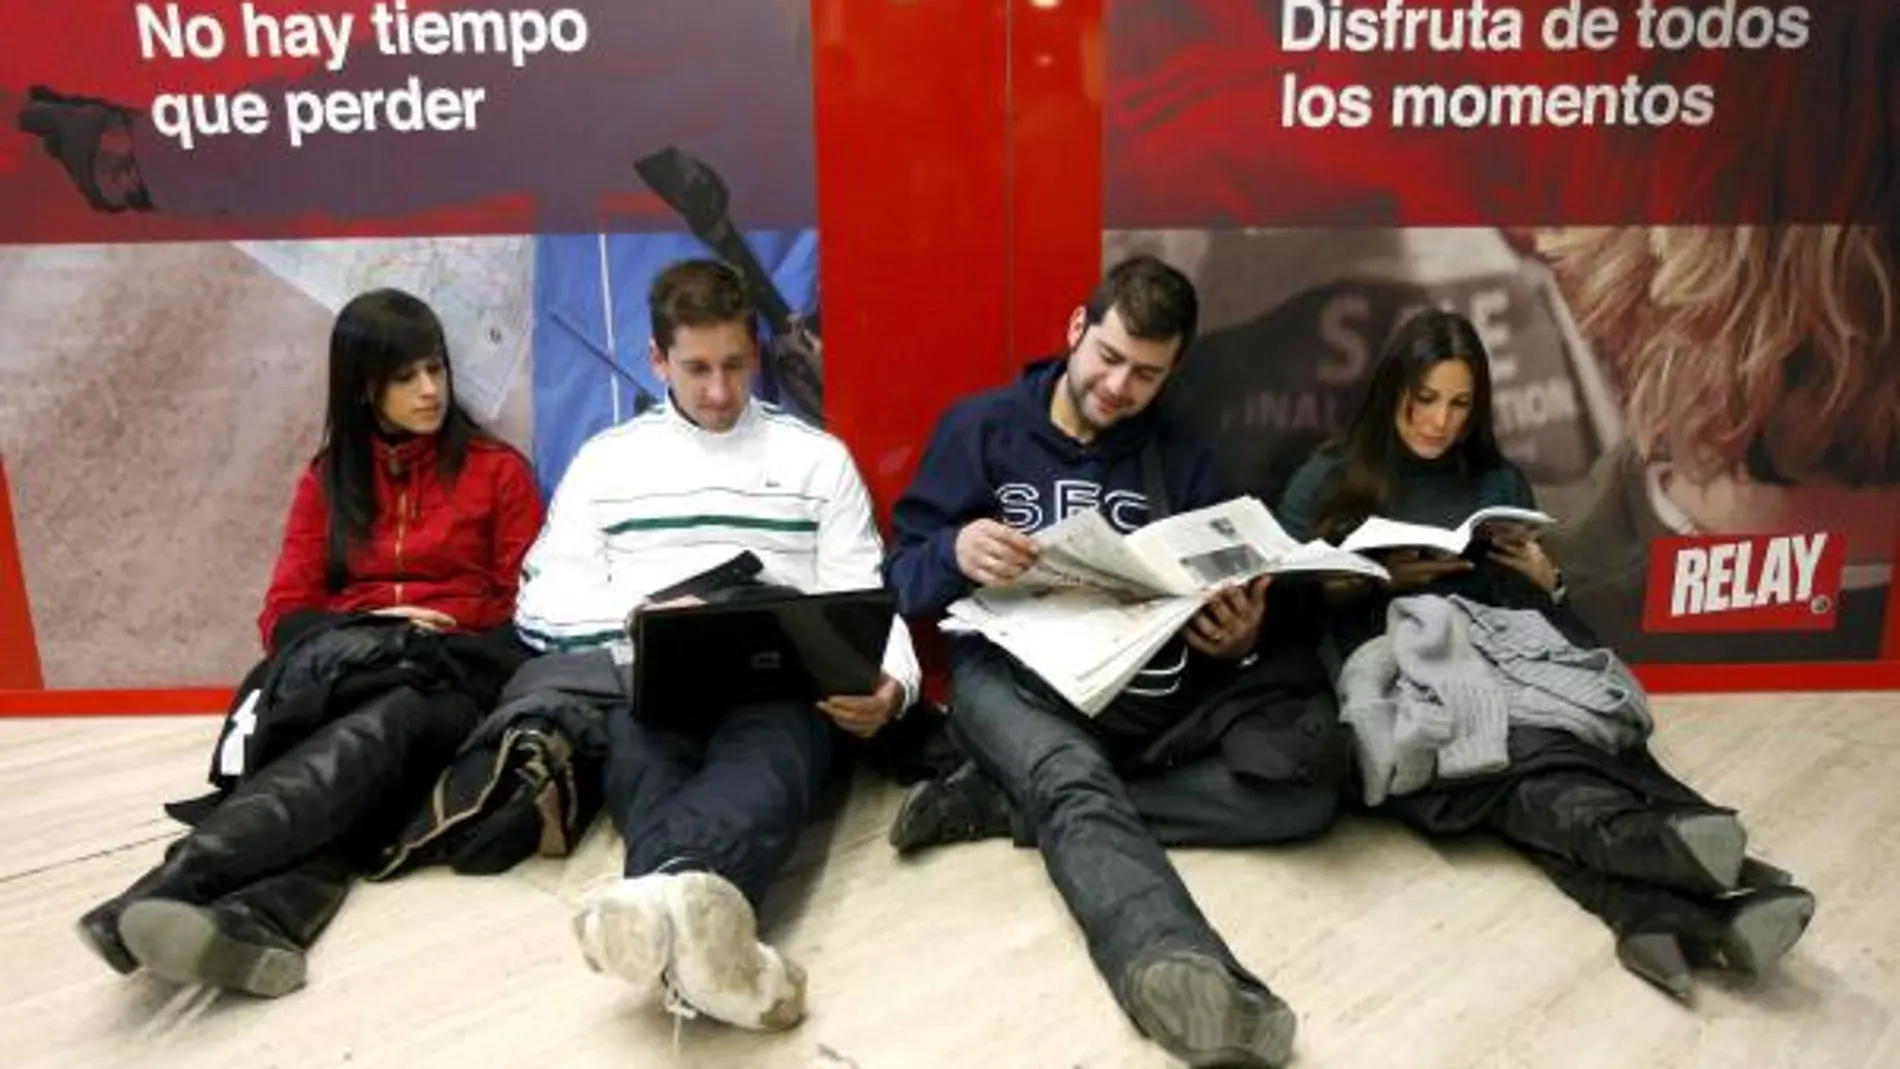 Tres jóvenes esperan su vuelo hoy en el aeropuerto de Sevilla